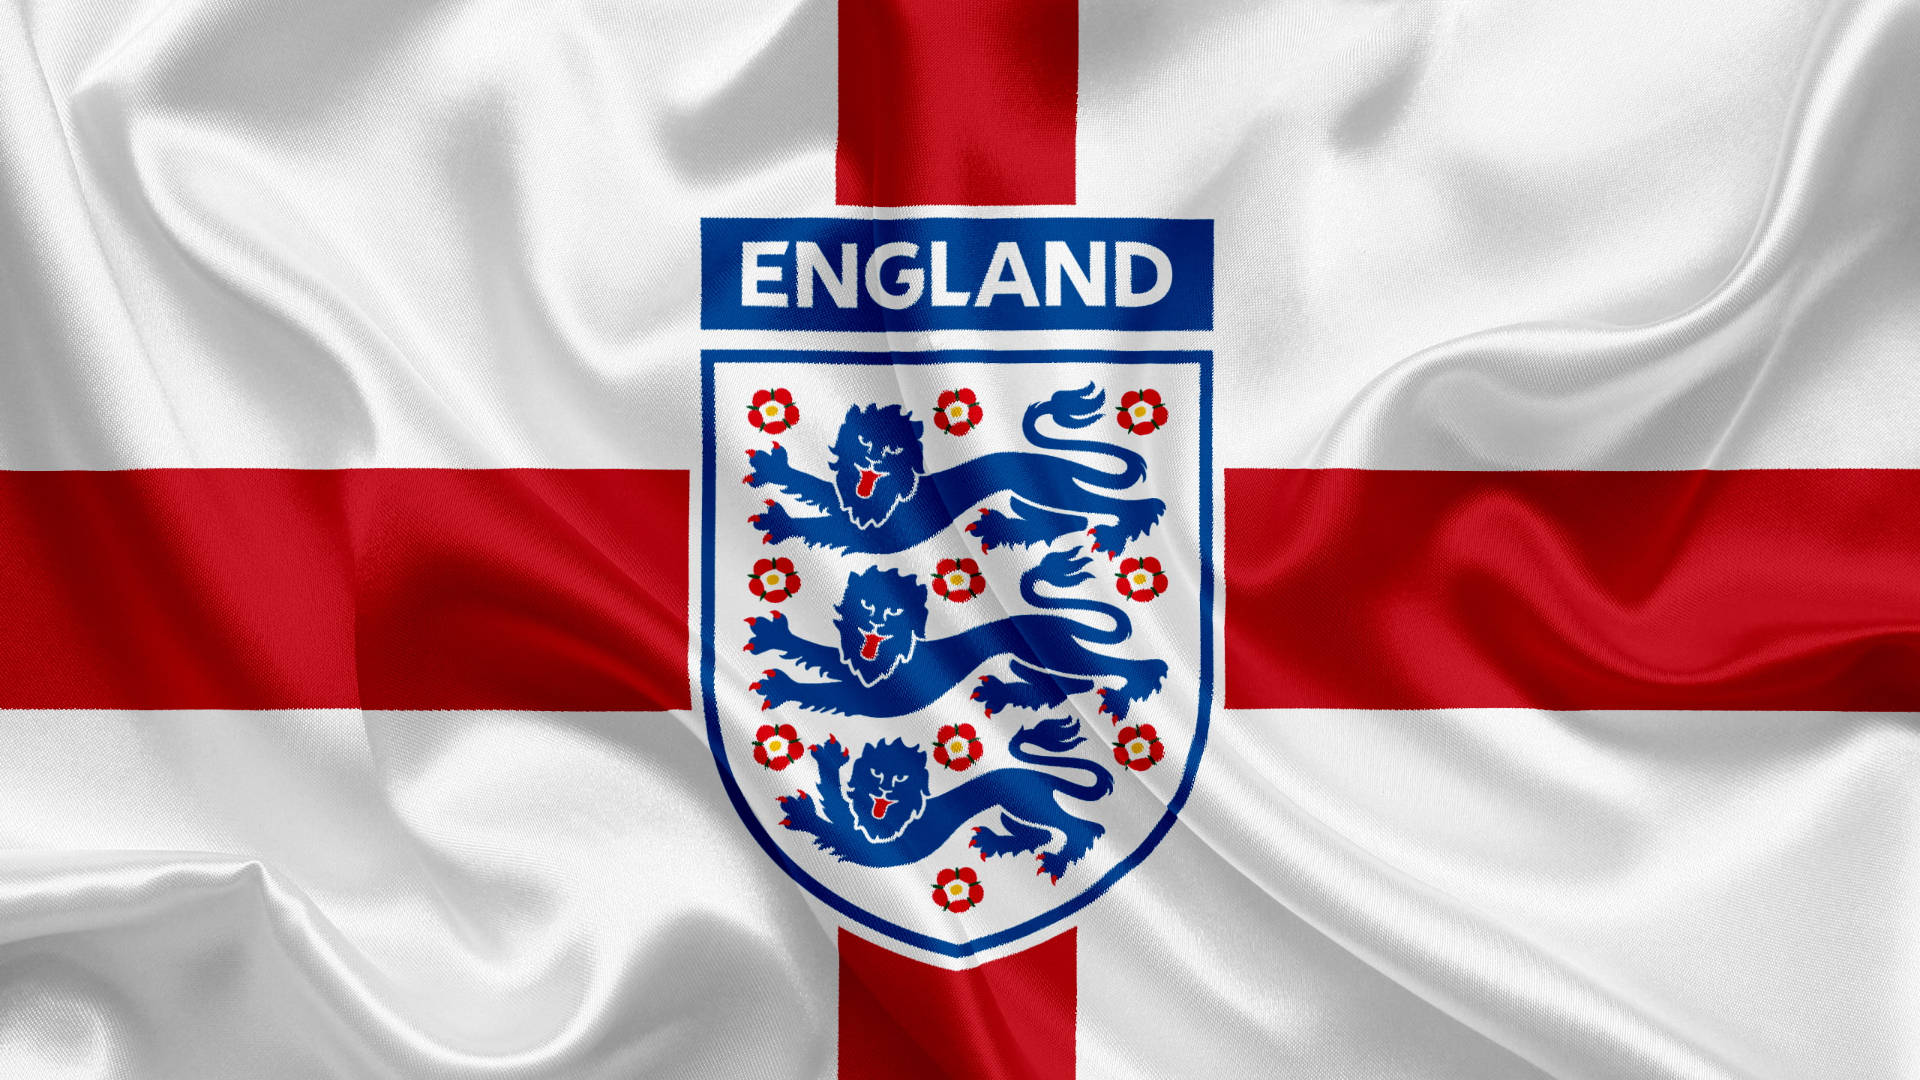 Imágenes De Fútbol De Inglaterra